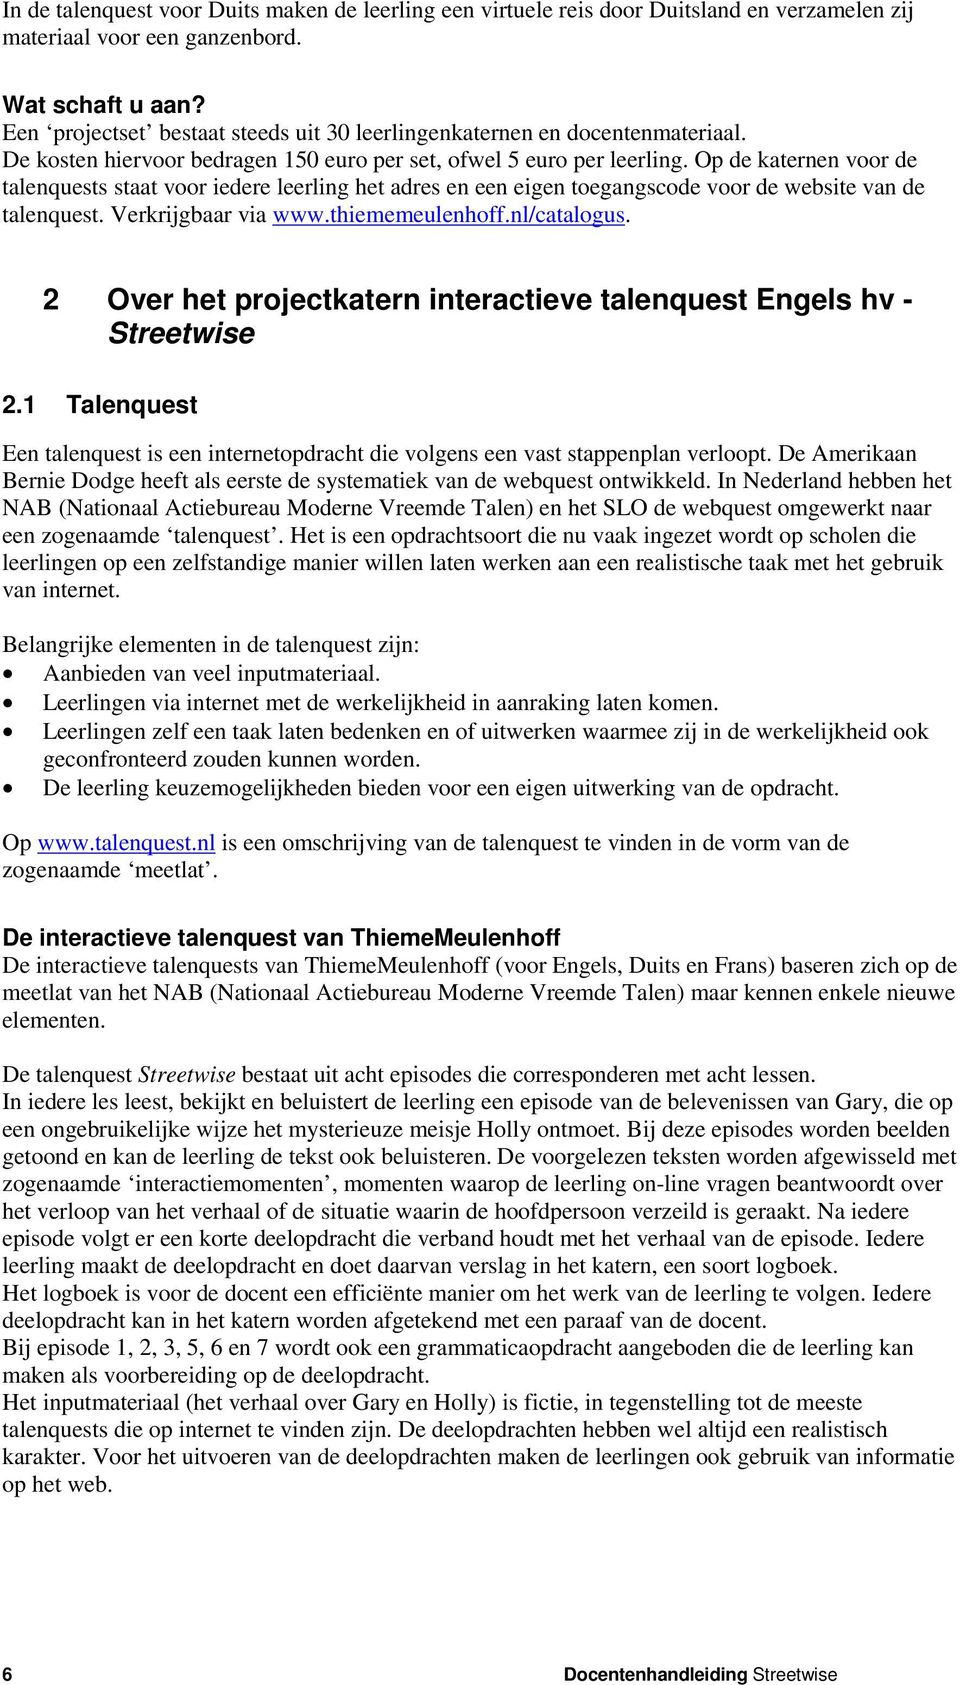 Op de katernen voor de talenquests staat voor iedere leerling het adres en een eigen toegangscode voor de website van de talenquest. Verkrijgbaar via www.thiememeulenhoff.nl/catalogus.